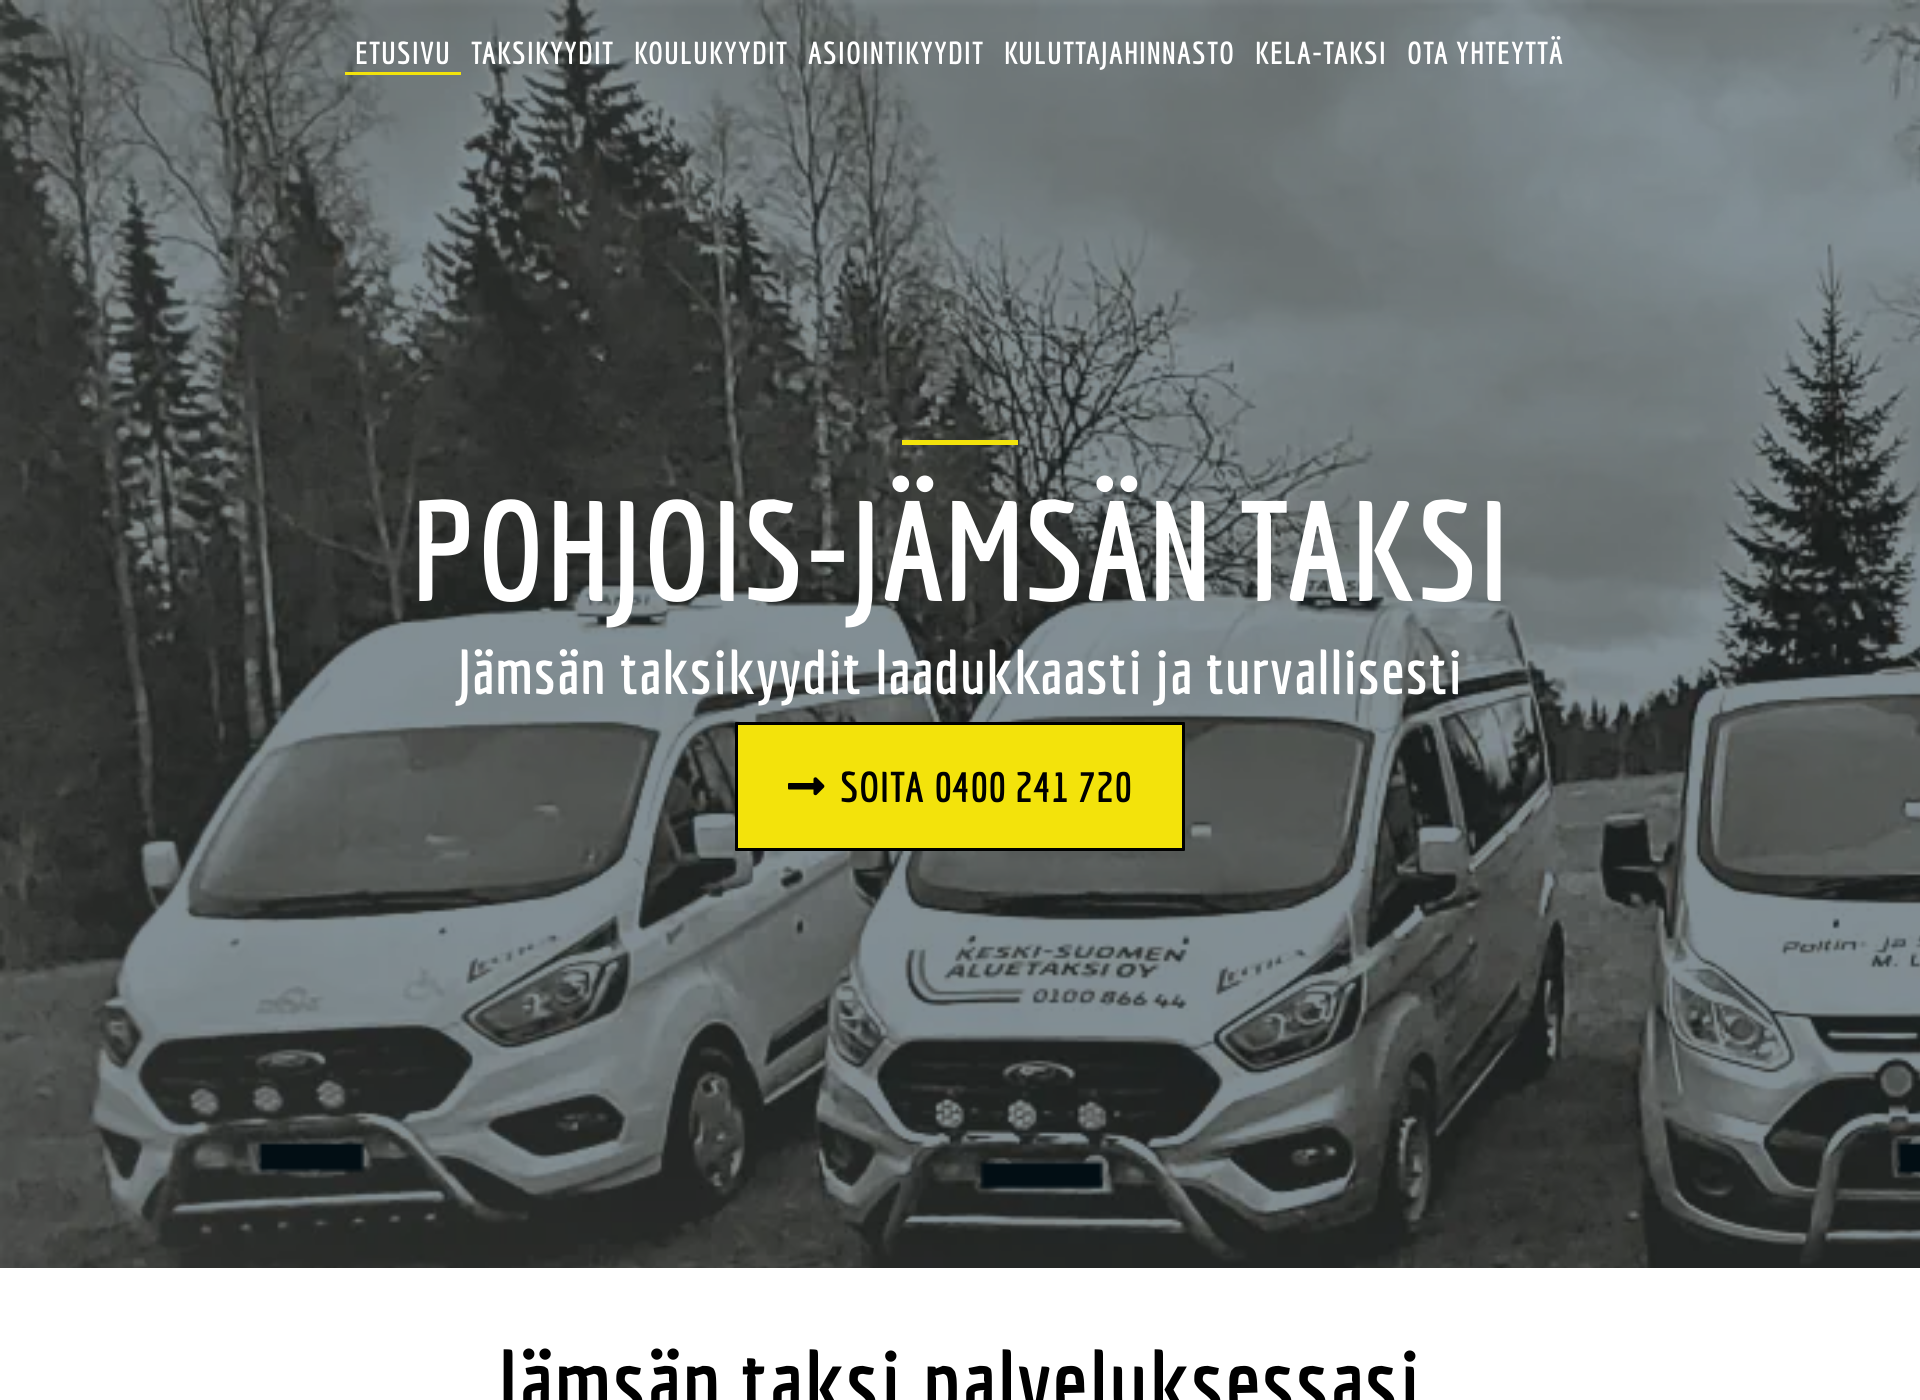 Skärmdump för pohjoisjamsantaksi.fi